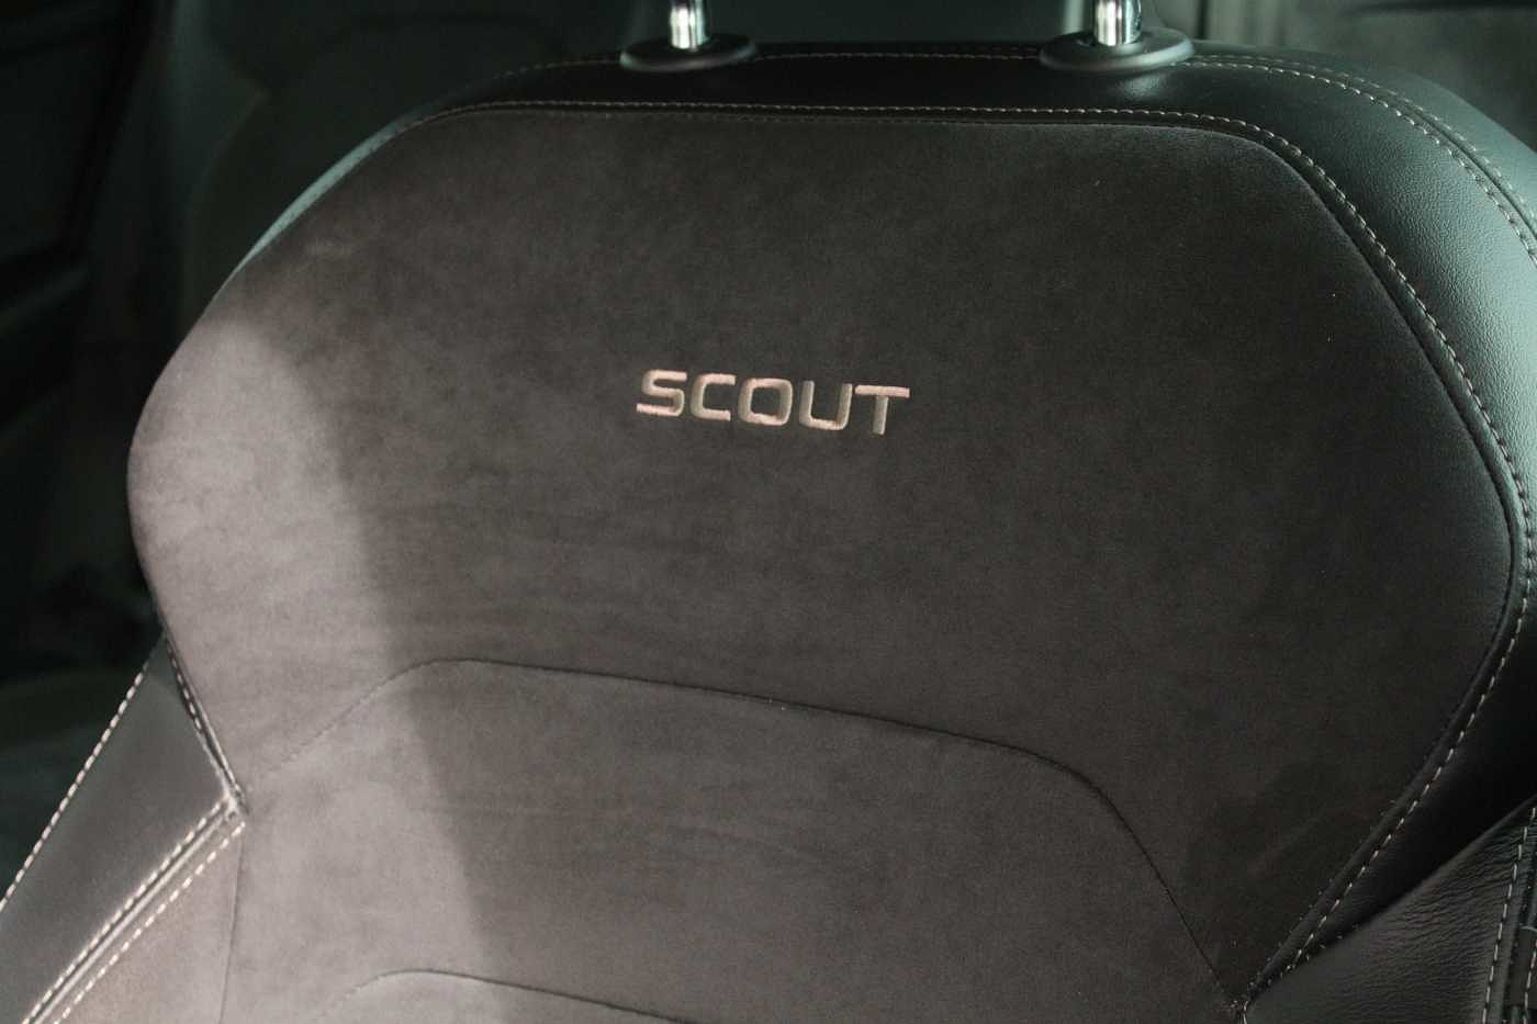 SKODA Kodiaq 2.0TDI 150ps 4X4 Scout 7 seats SCR SUV